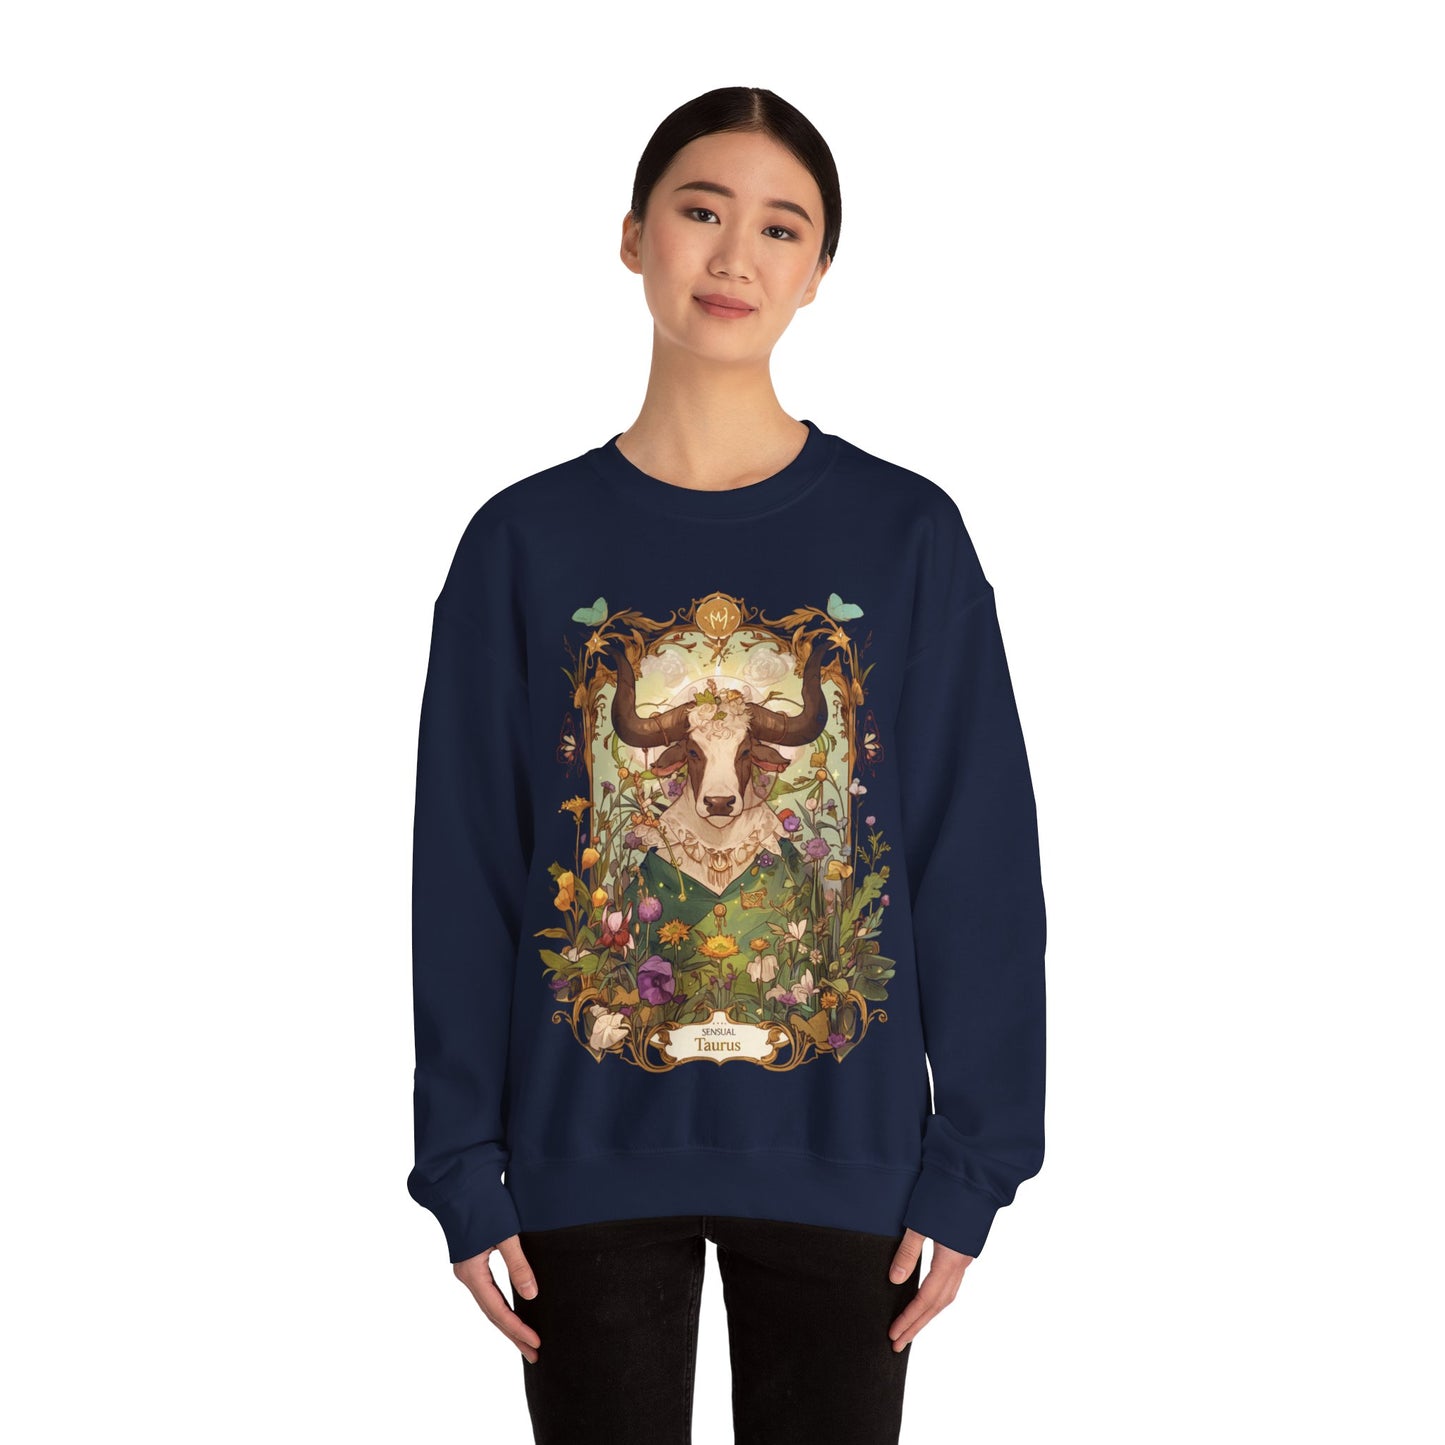 Garden of Taurus: Astrology in Bloom Sweater